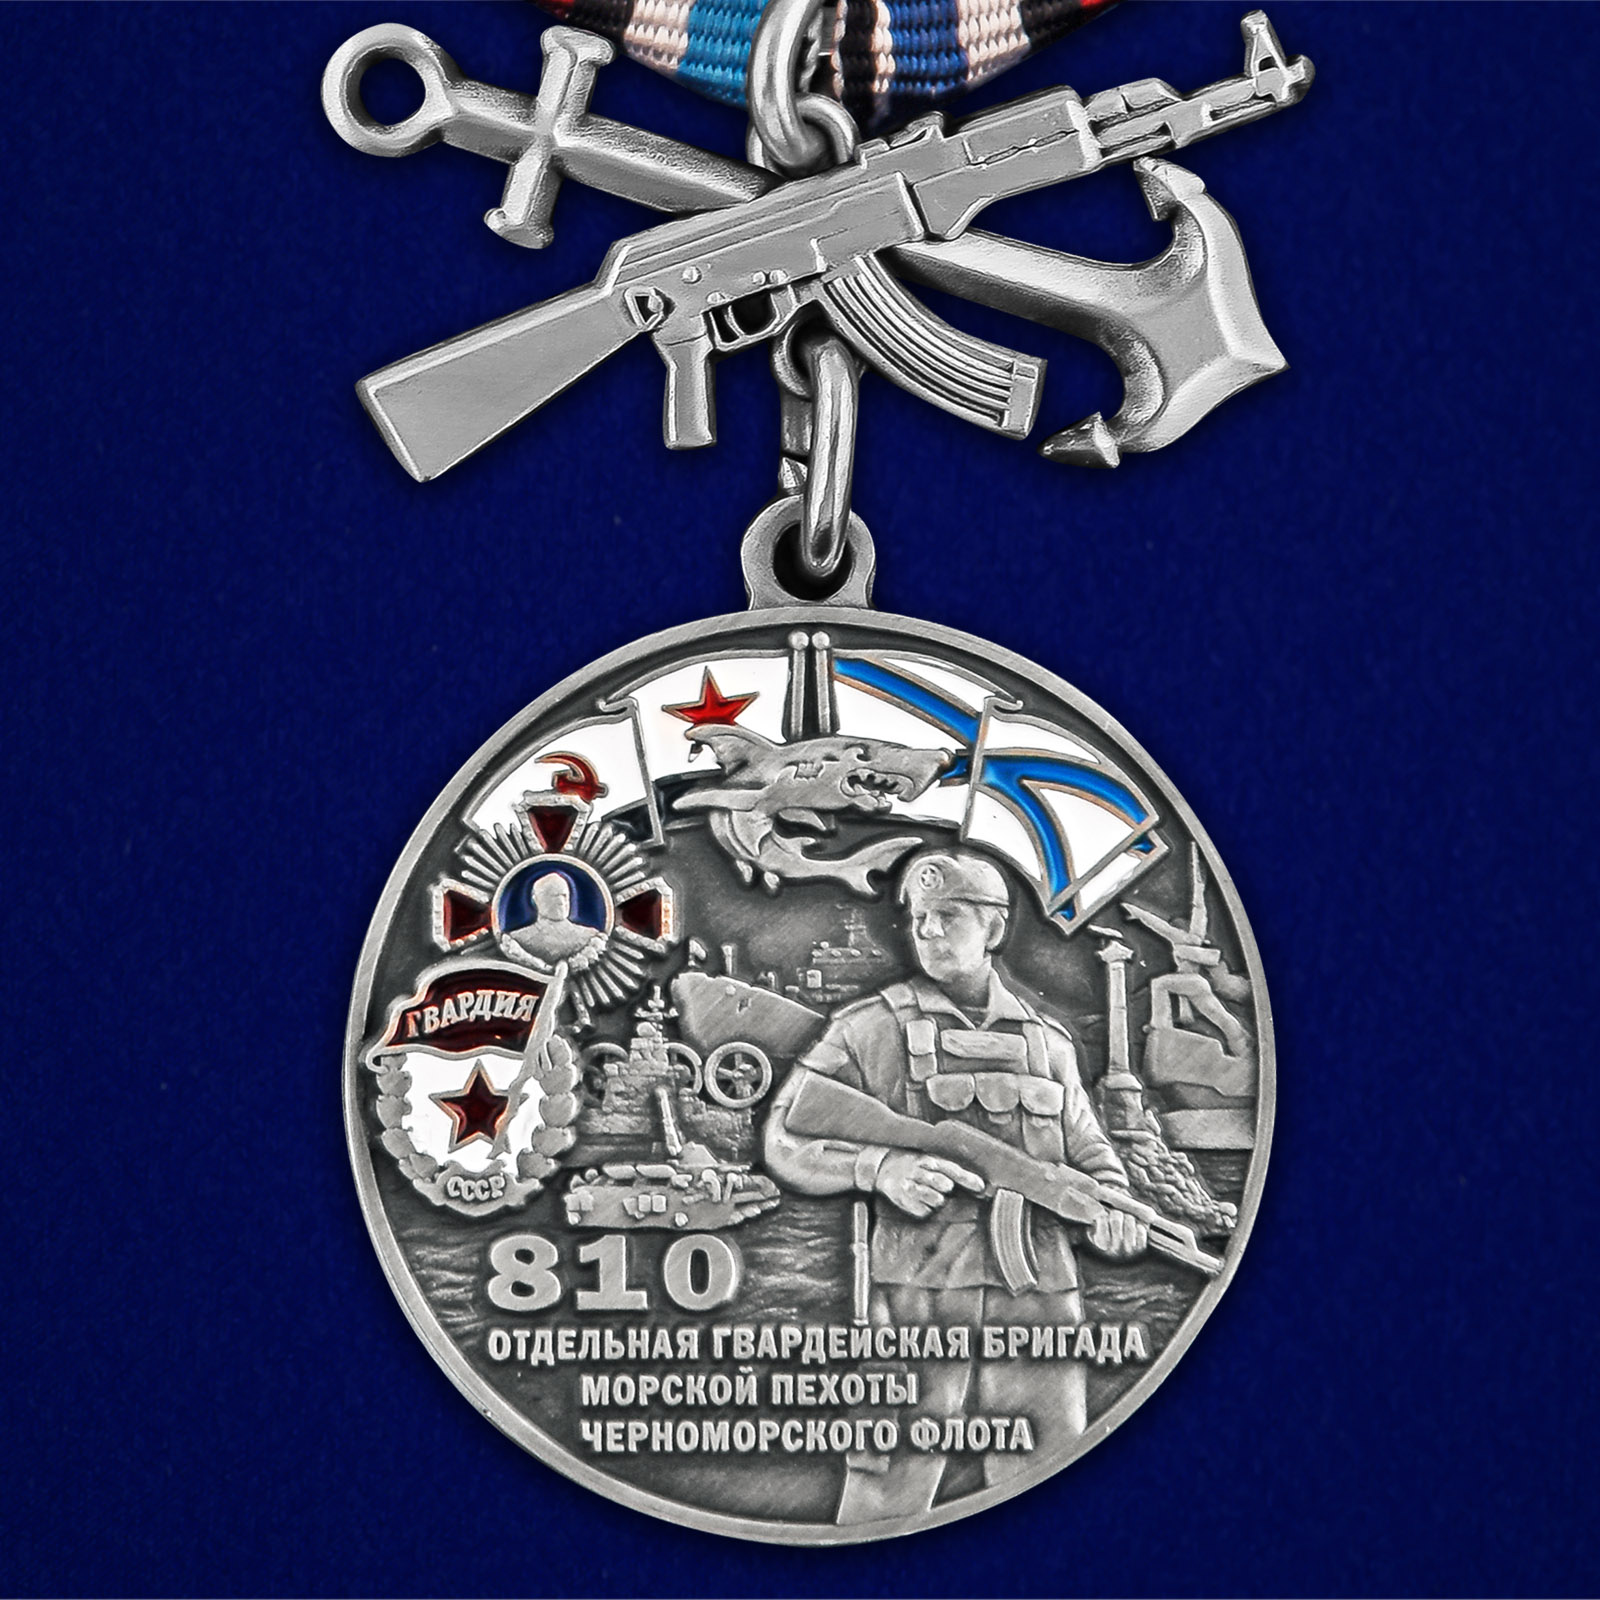 Купить медаль 810-я отдельная гвардейская бригада морской пехоты выгодно